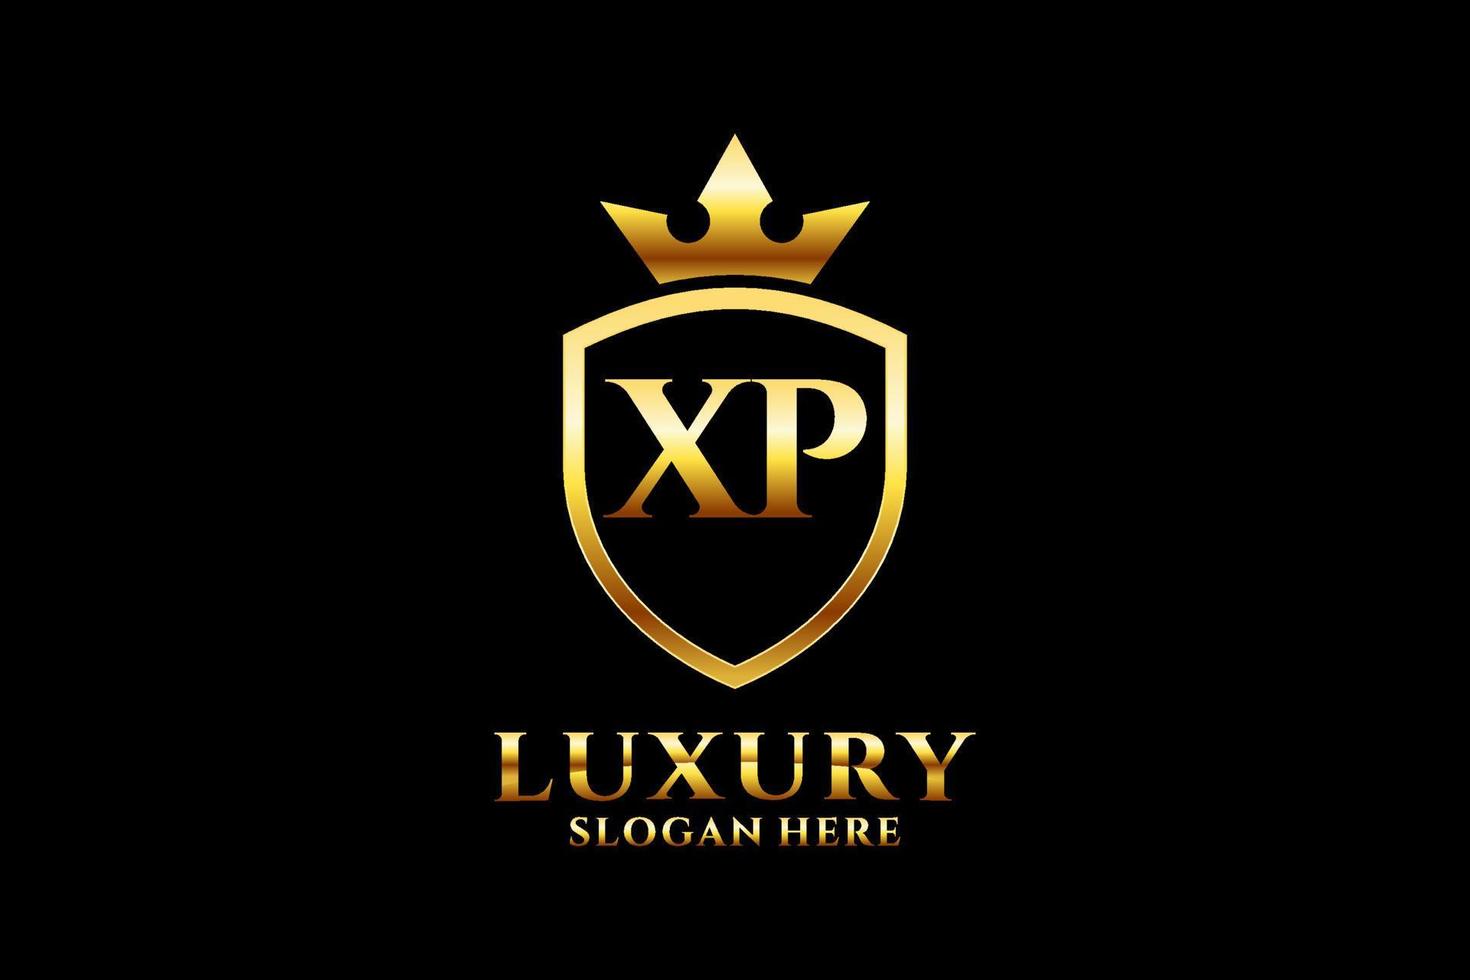 första xp elegant lyx monogram logotyp eller bricka mall med rullar och kunglig krona - perfekt för lyxig branding projekt vektor